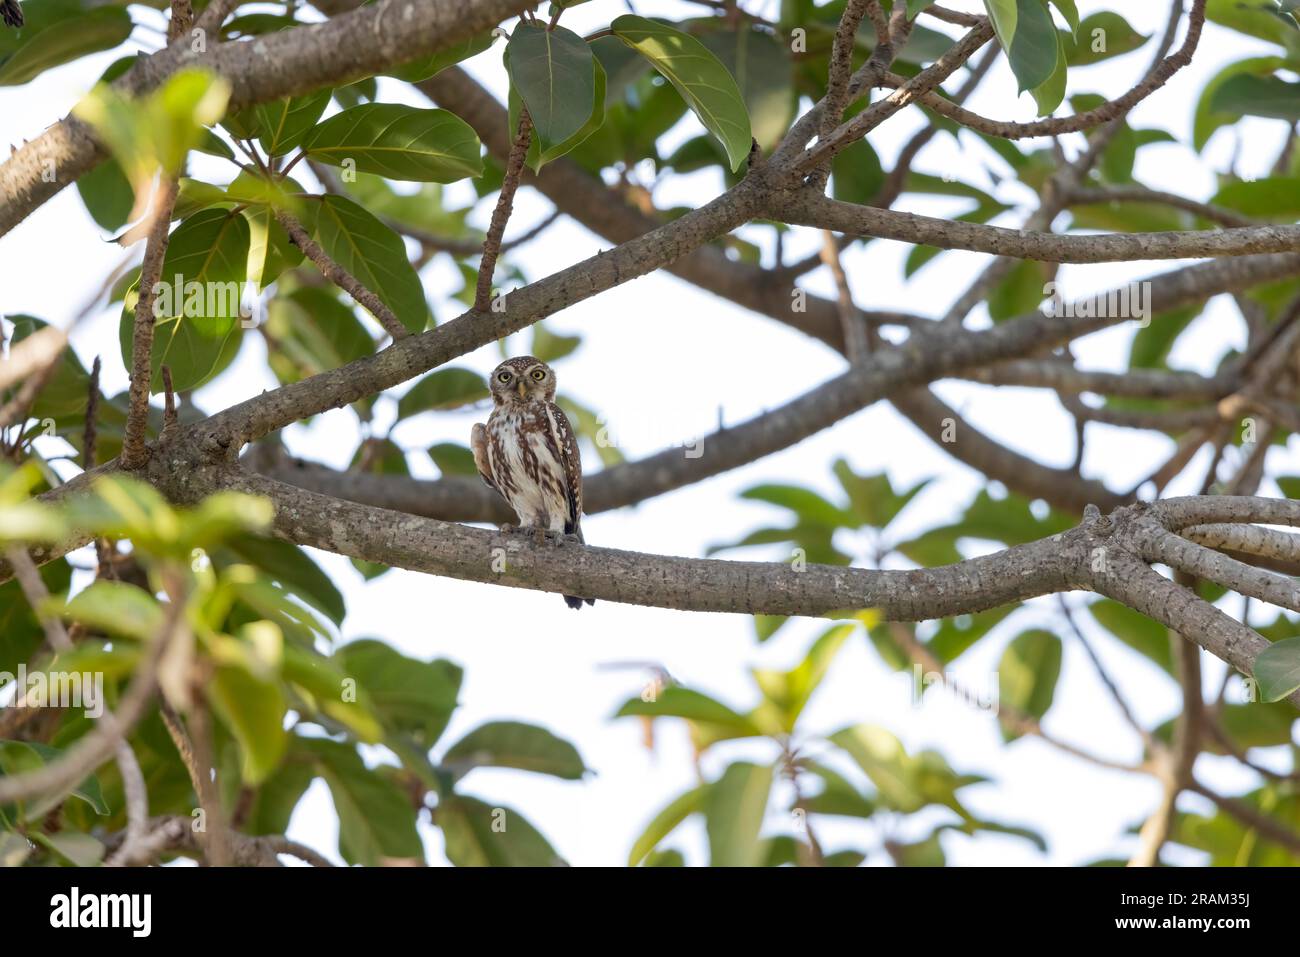 Owlet à pois nacrés Glaucidium perlatum, adulte perchée dans un arbre, Nambikala, Brikama, Gambie, mars Banque D'Images